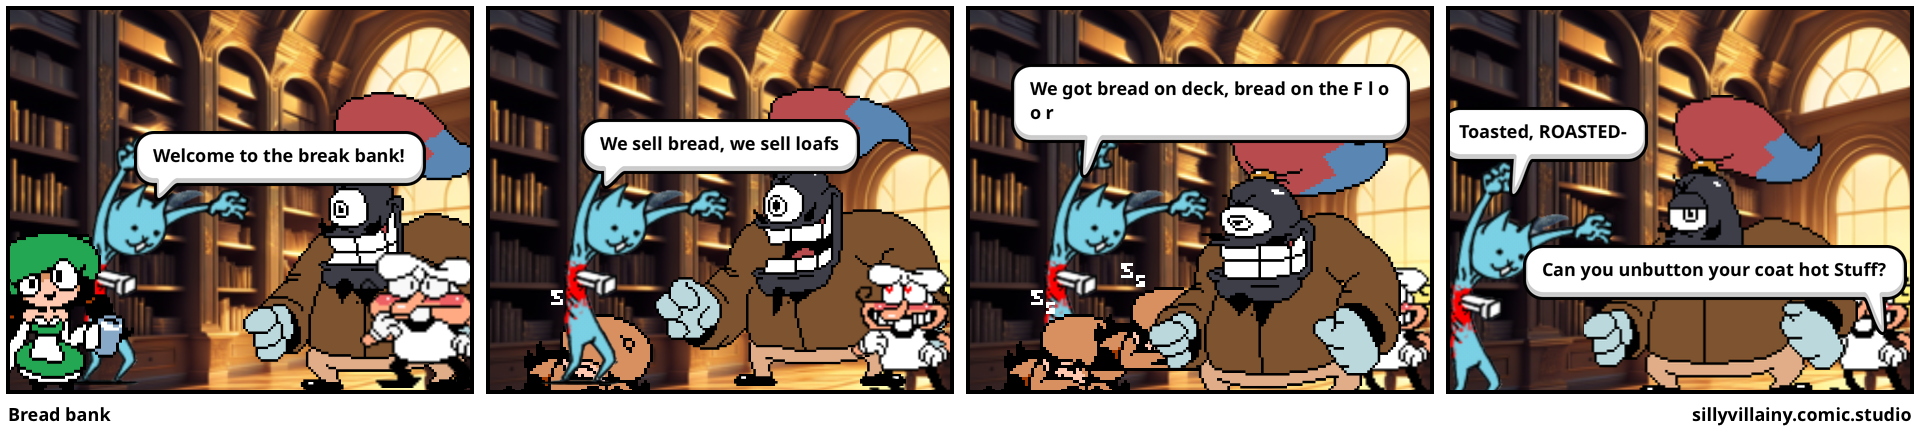 Bread bank